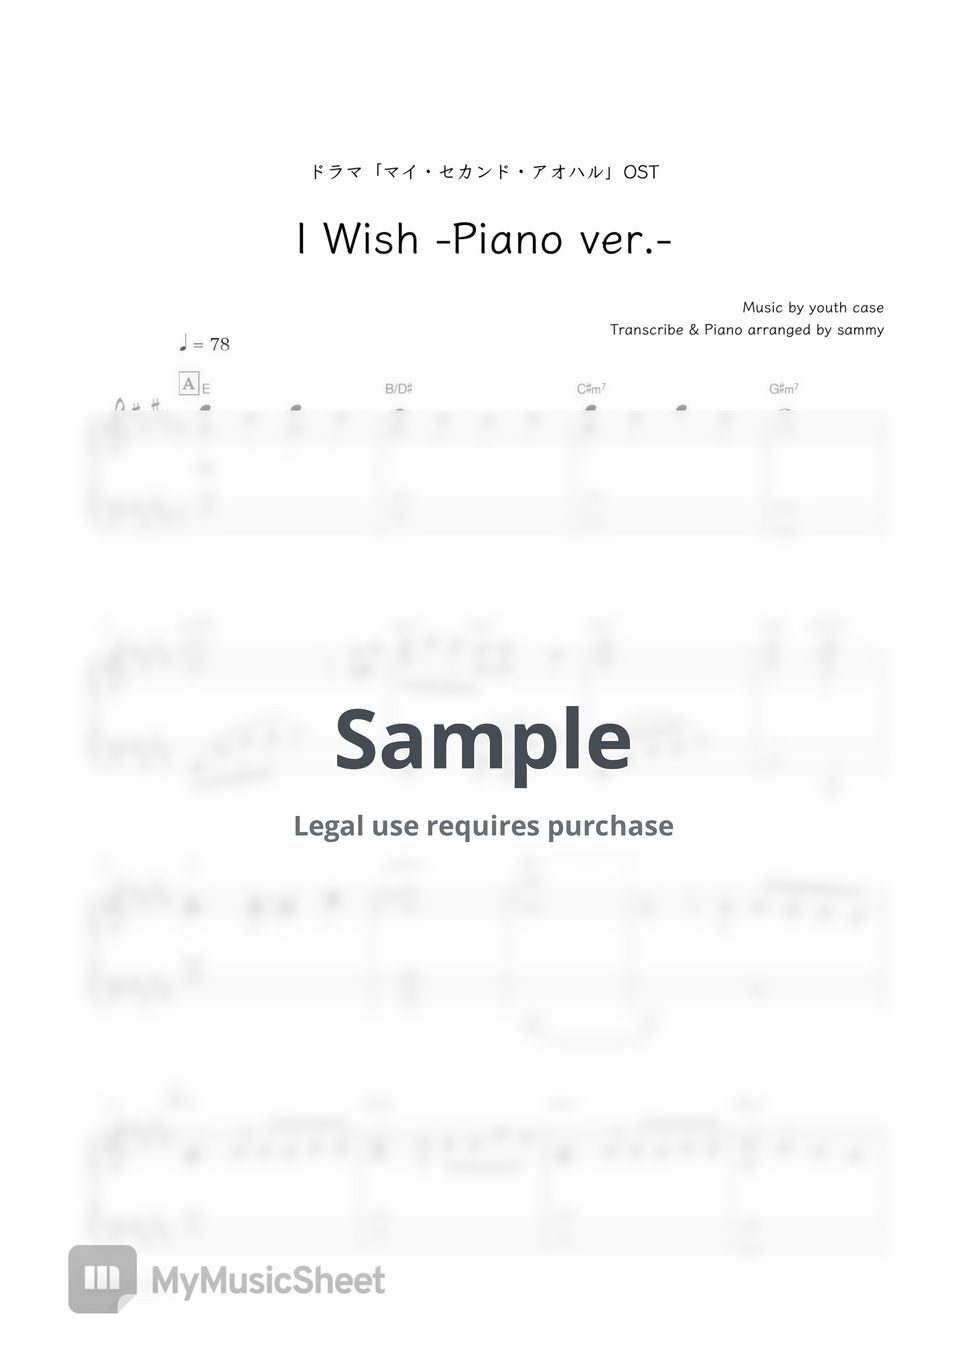 なにわ男子・ドラマ「マイ・セカンド・アオハル」OST - I Wish (-Piano ver.-) by sammy